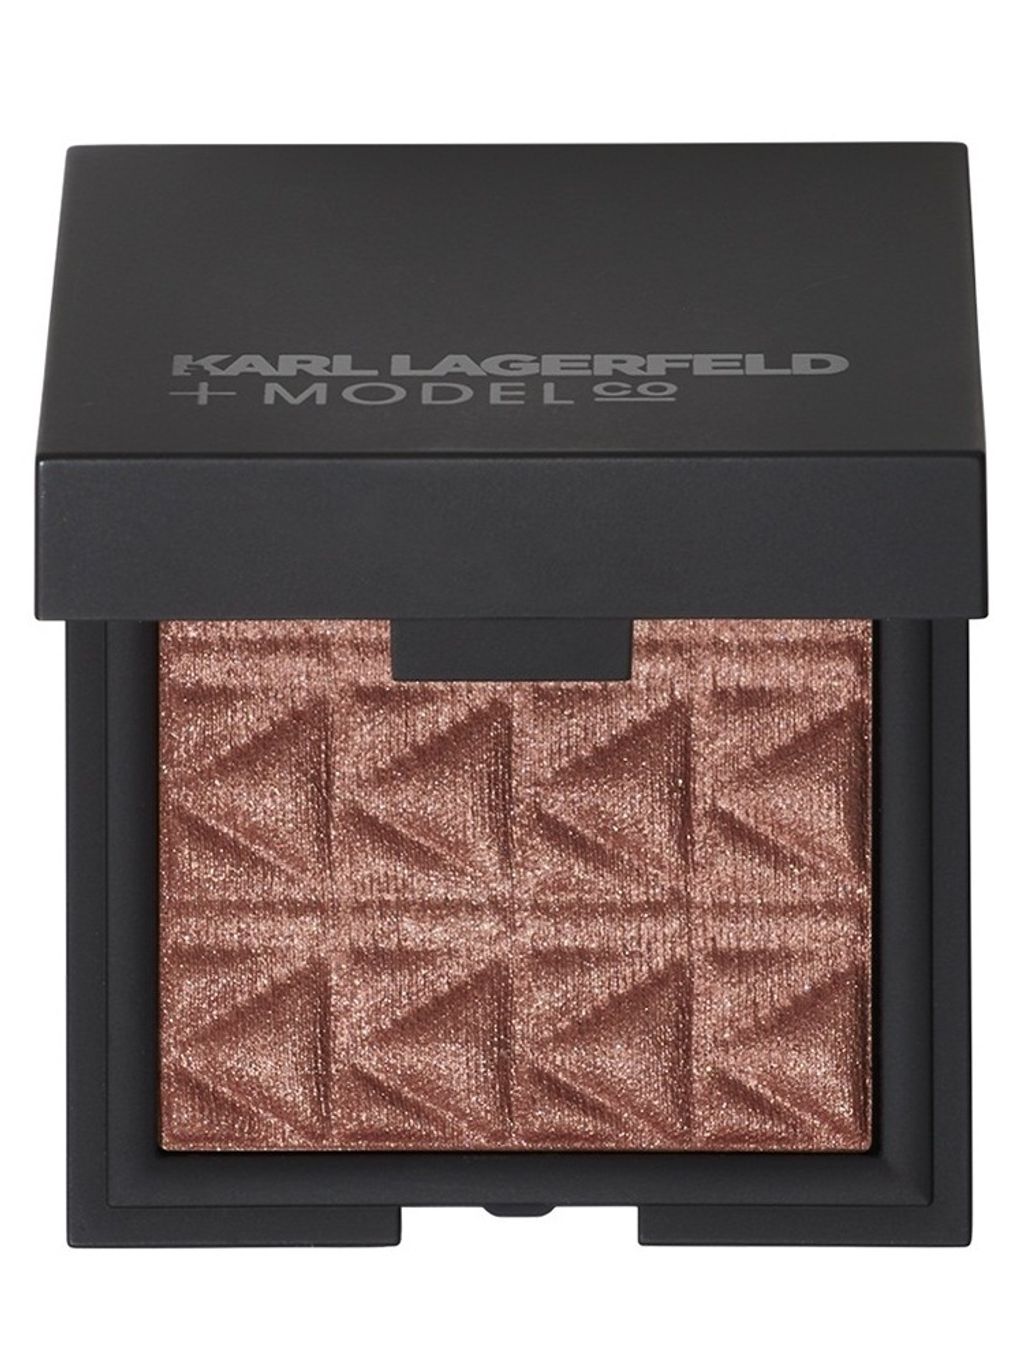 Karl Lagerfeld + ModelCo Lip Balm - Silver Case.jpeg